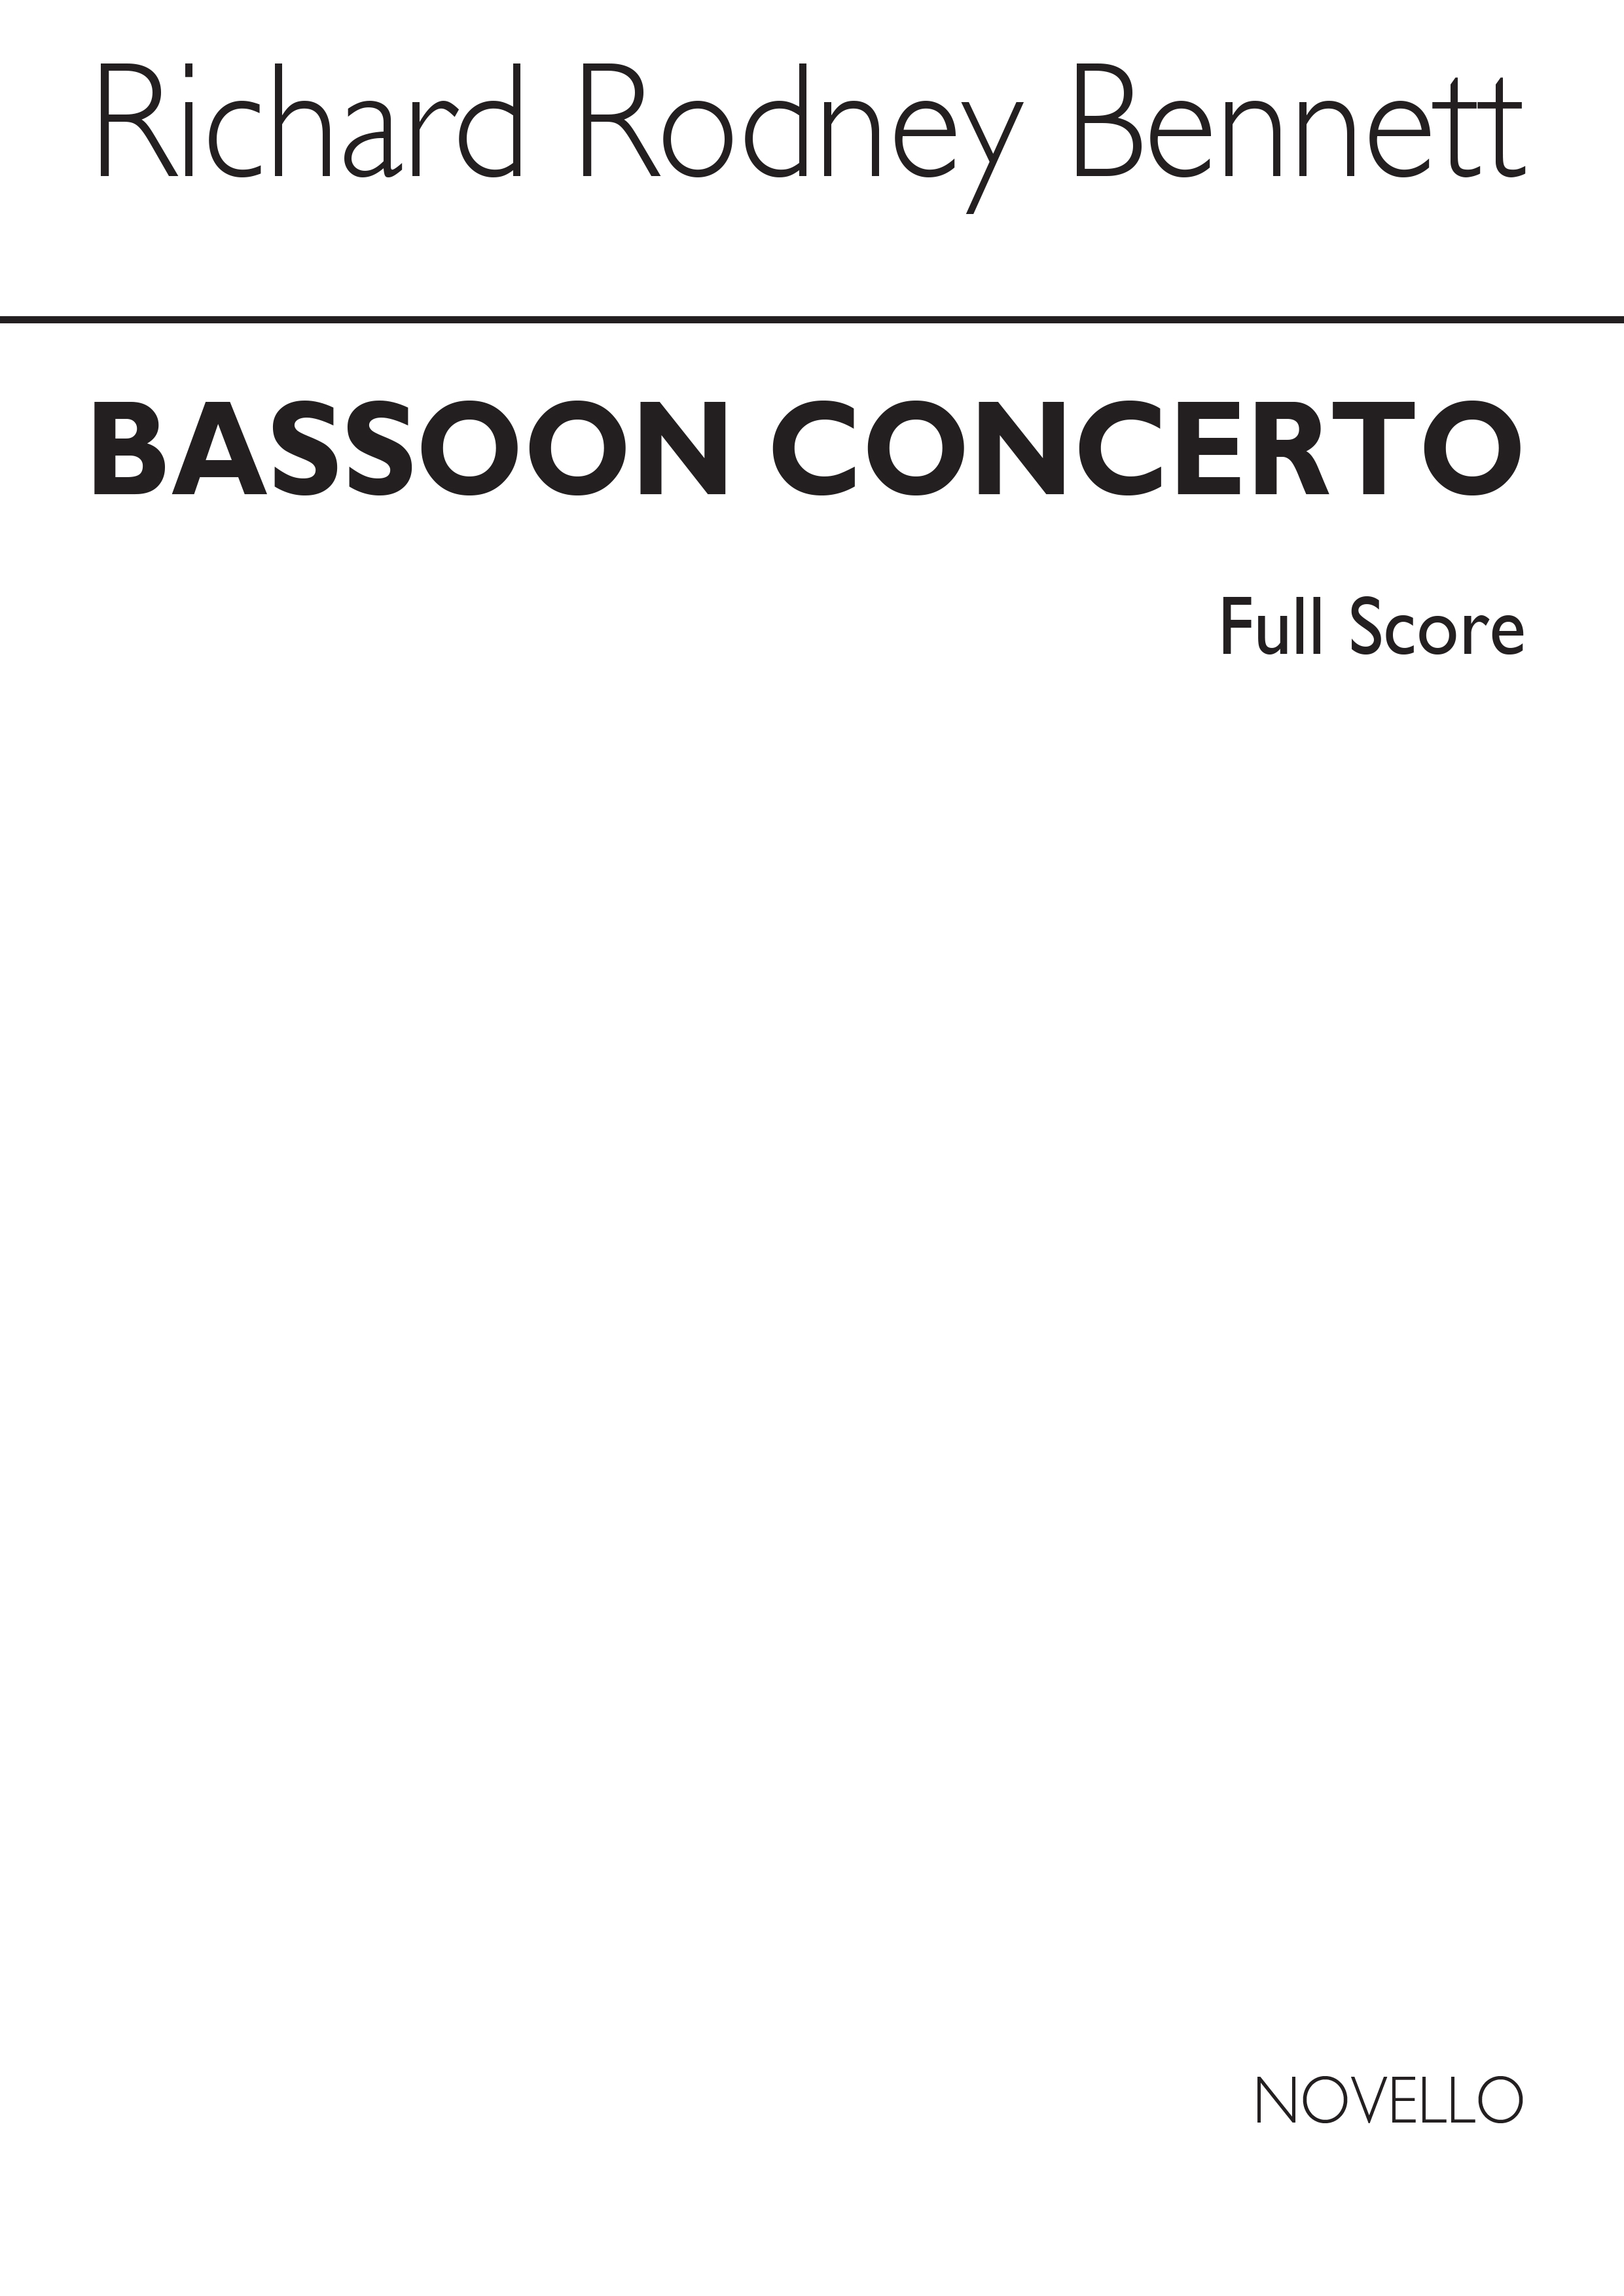 RR Bennett: Concerto For Bassoon And Strings (Full Score)